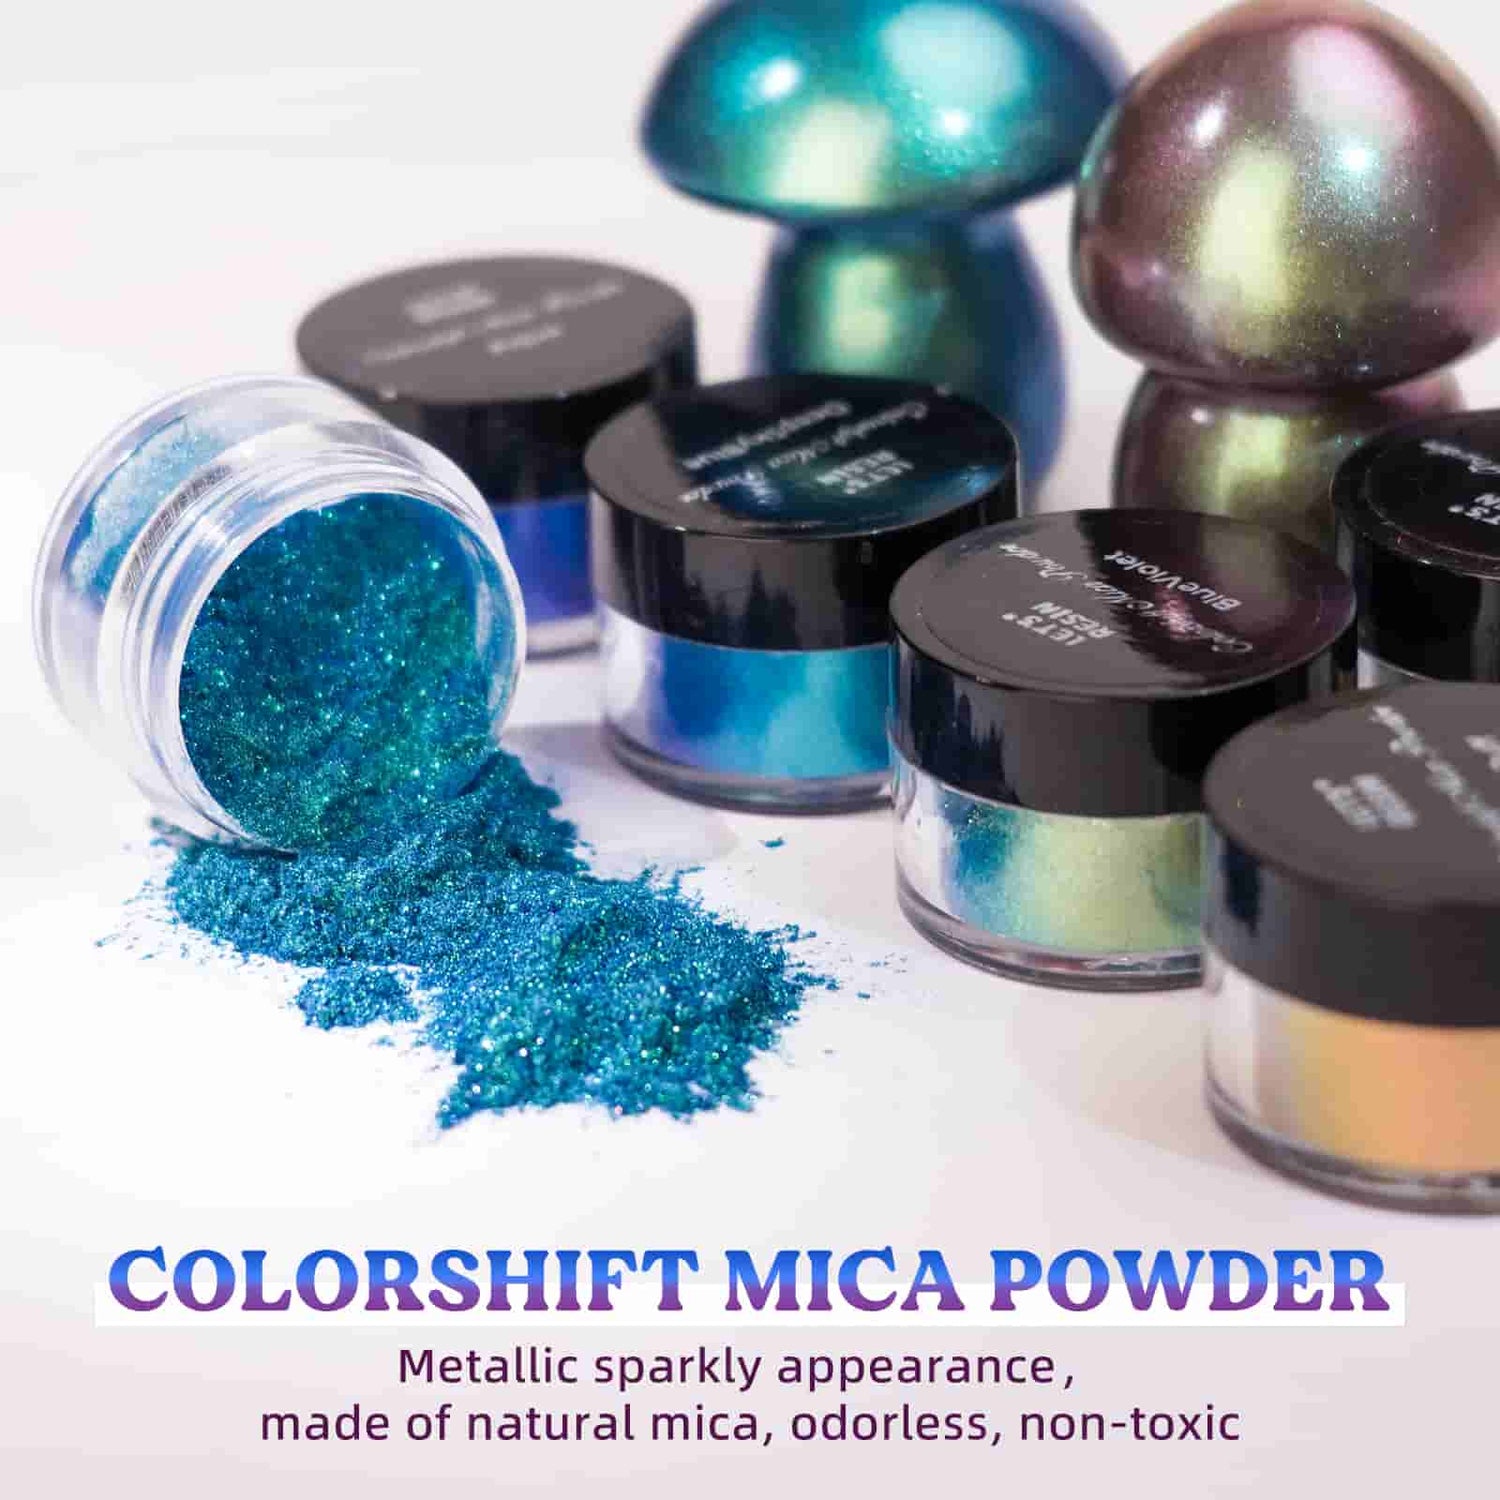 18 Color Shift Chameleon Mica Powder